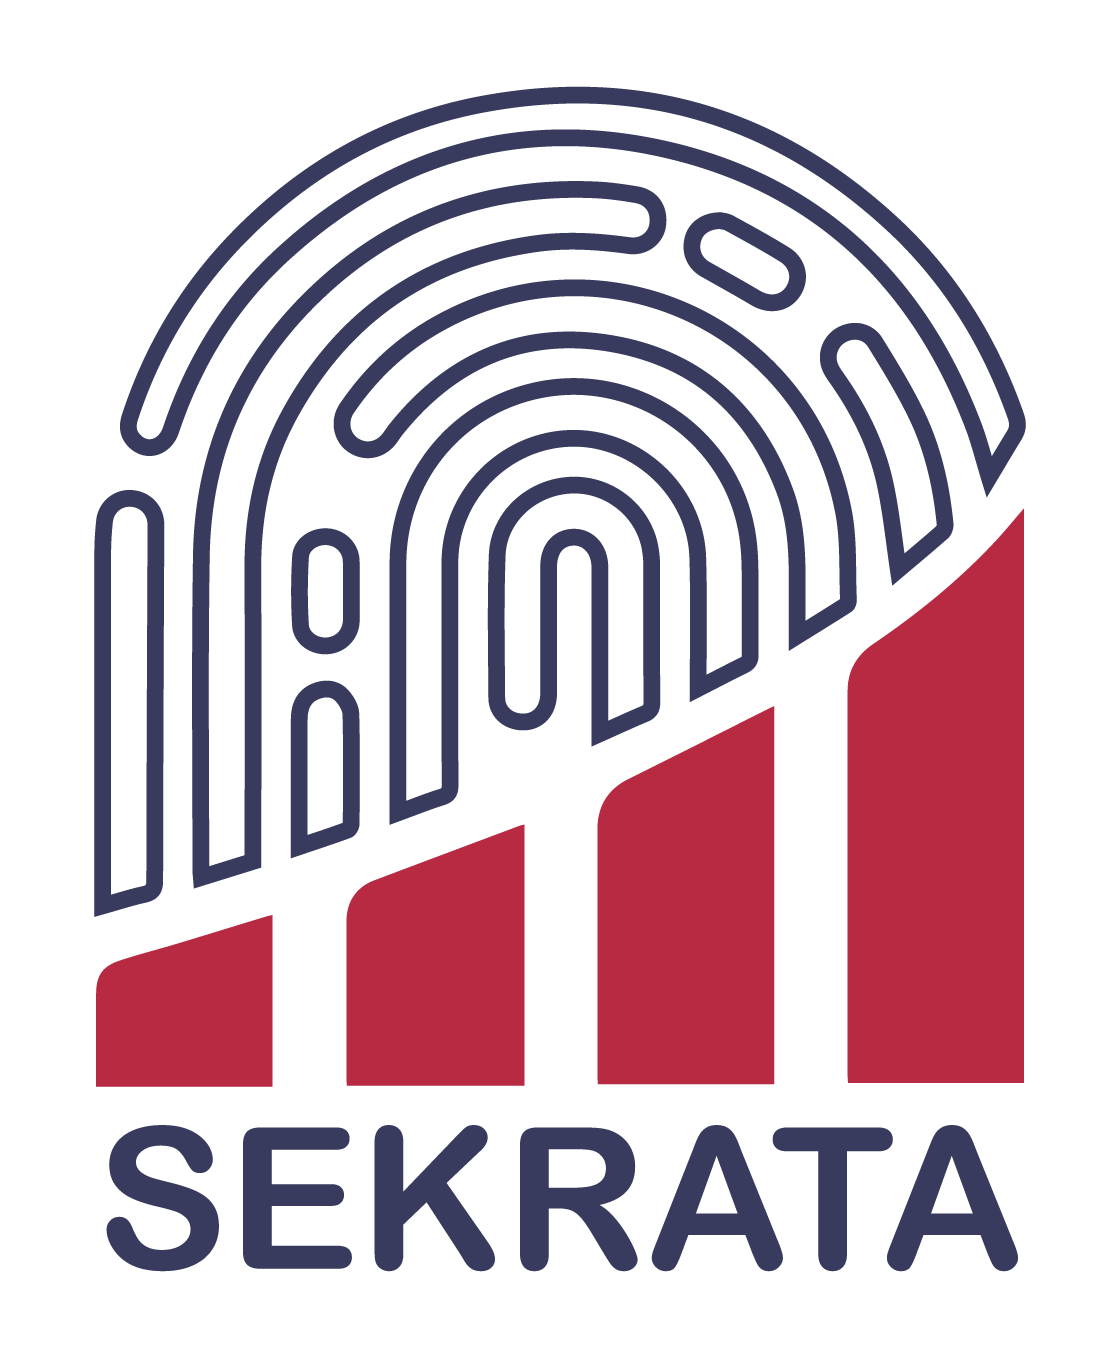 Logo de la startup SEKRATA